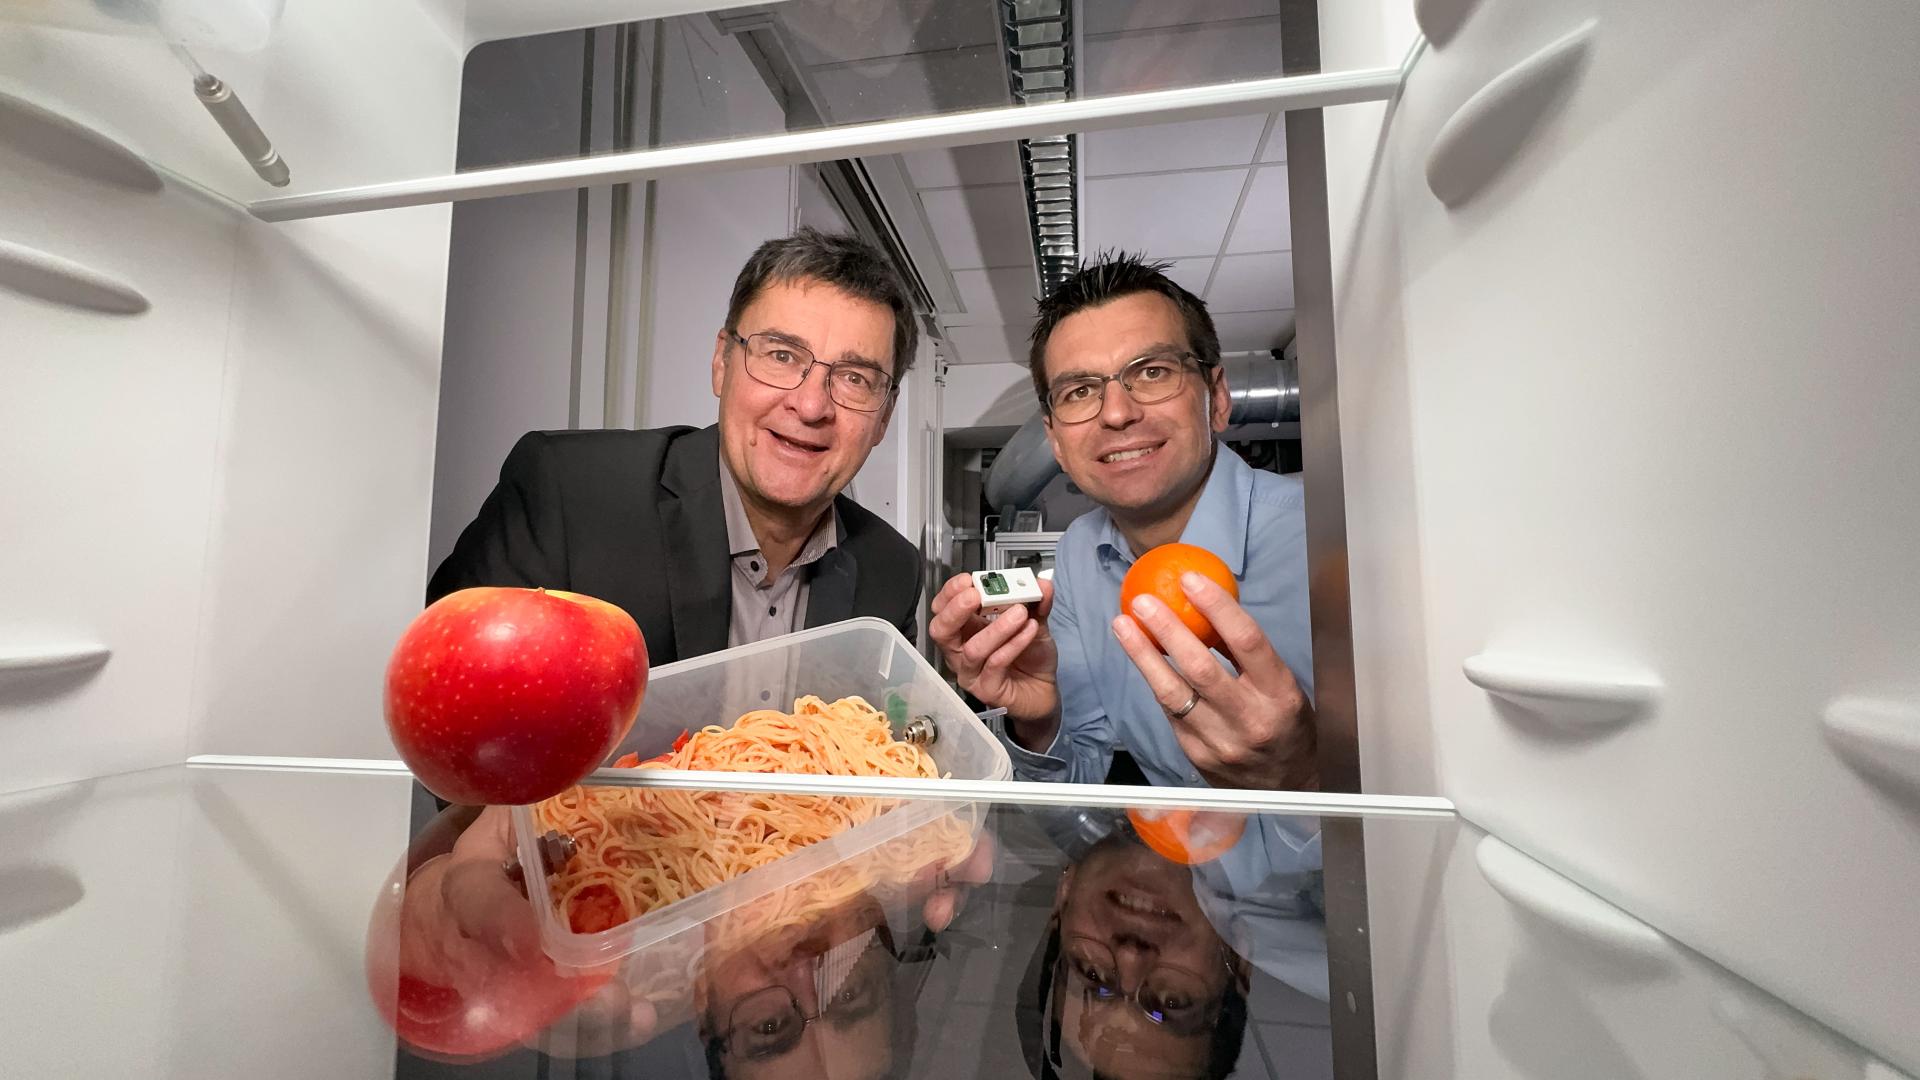 Professor Andreas Schütze (l.) und Christian Bur mit Orange, Nudelbox und Sensorin der Hand in einen Kühlschrank blickend